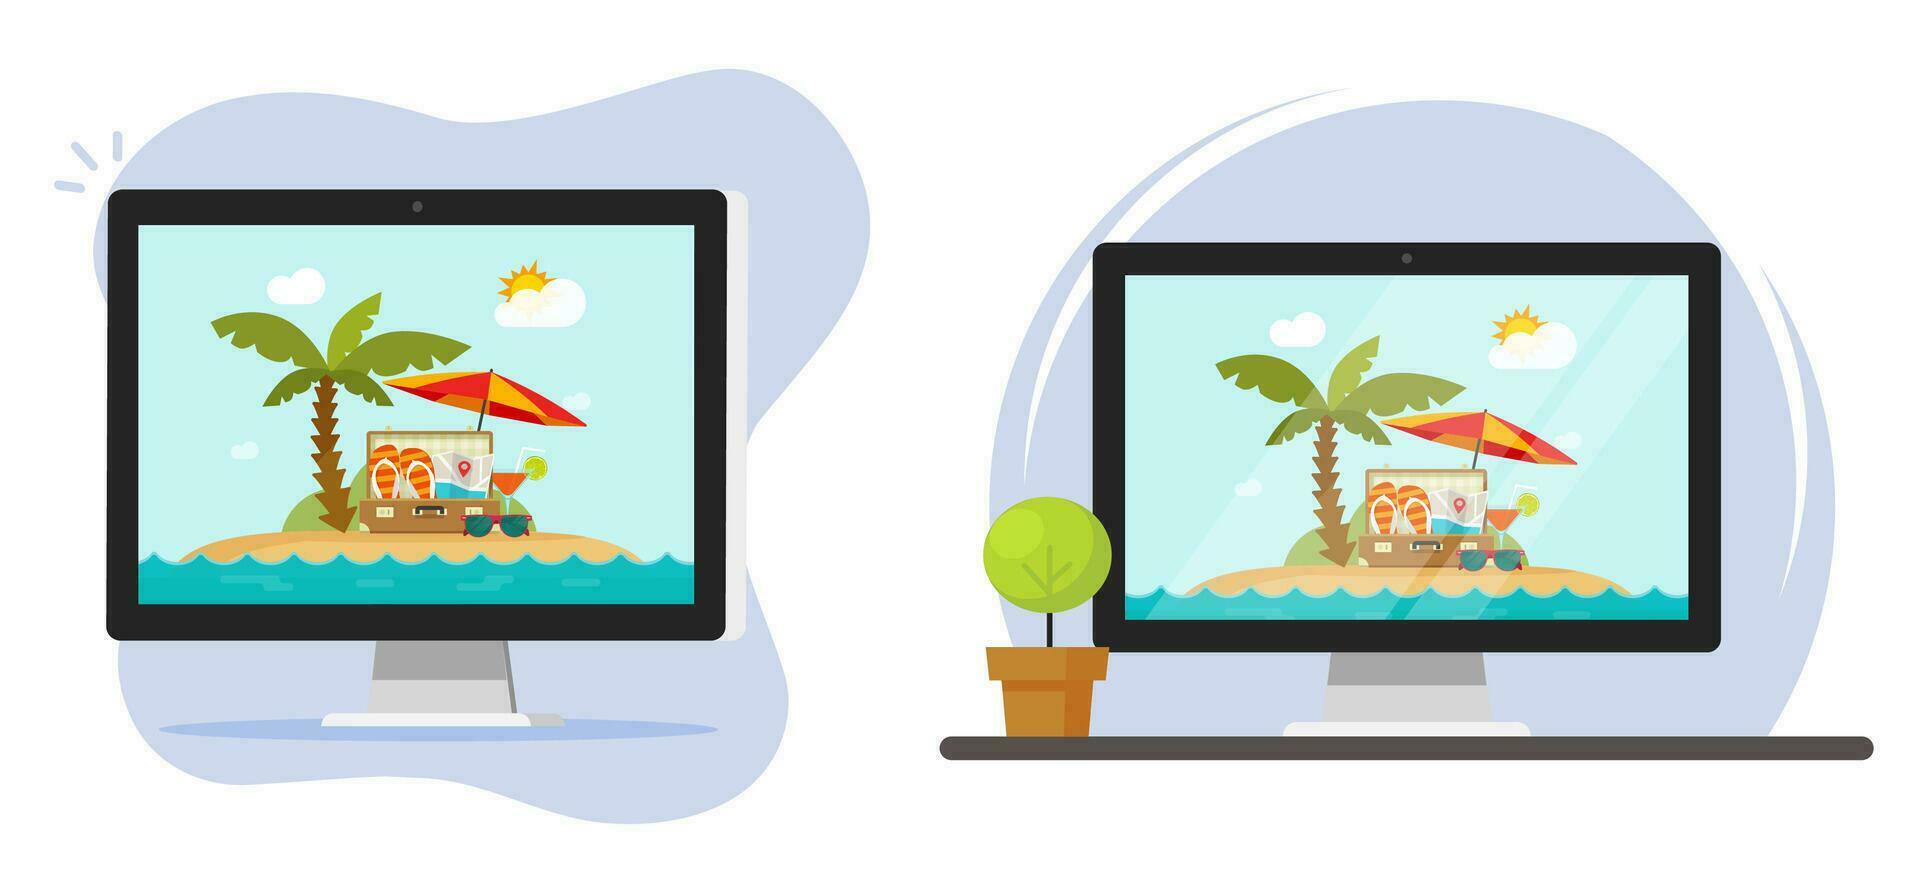 viaje turismo en línea digital en computadora ordenador personal pantalla vector icono gráfico imagen, viaje vacaciones Internet reserva servicio, playa mar recurso web solicitud clipart moderno diseño